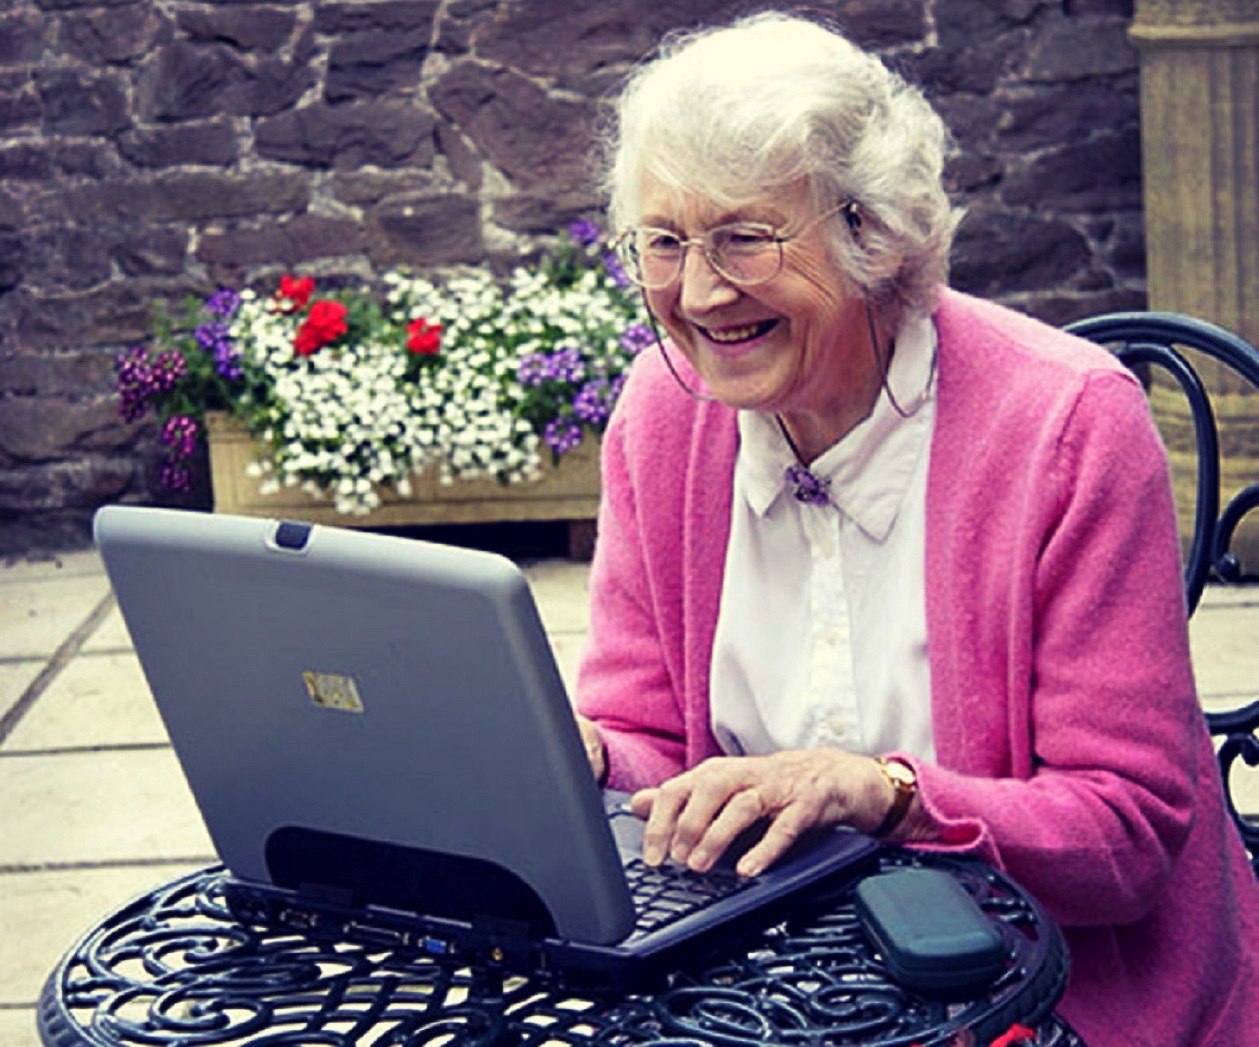 Авито для пенсионеров. Бабушка и компьютер. Пенсионеры в интернете. Пенсионеры и компьютер. Современная бабушка за компьютером.